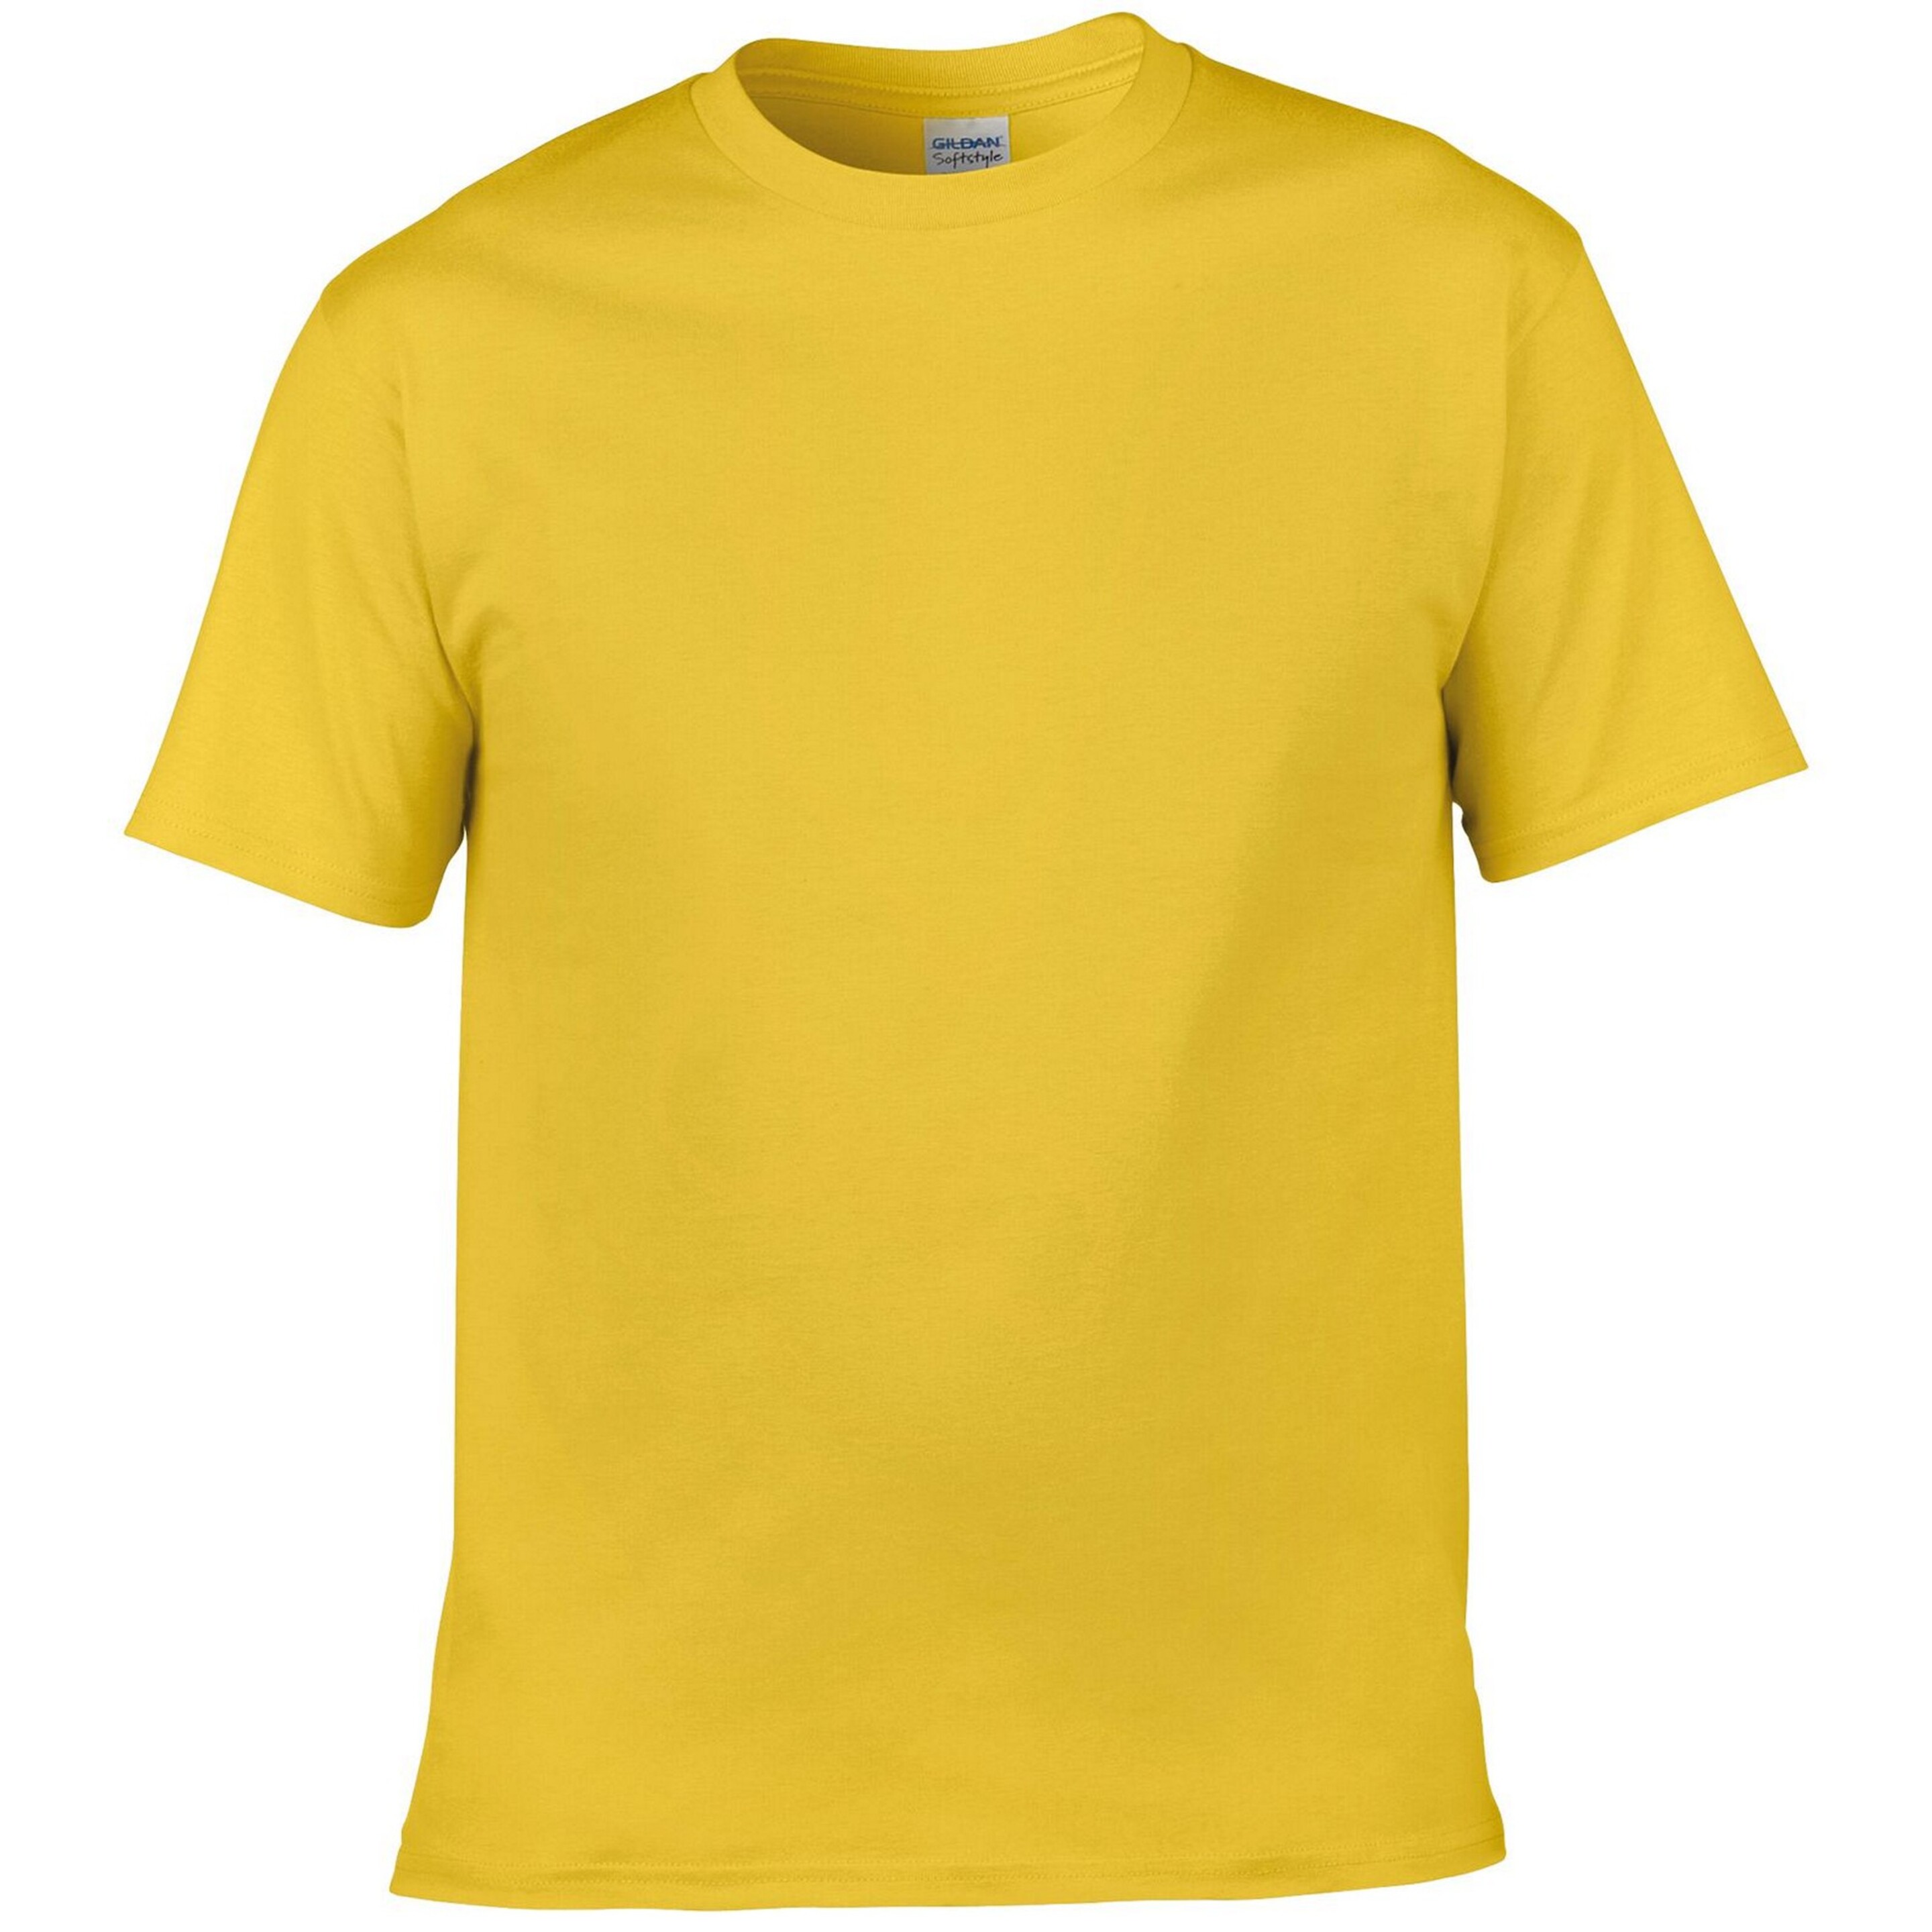 Camiseta Suave Gildan - amarillo - 